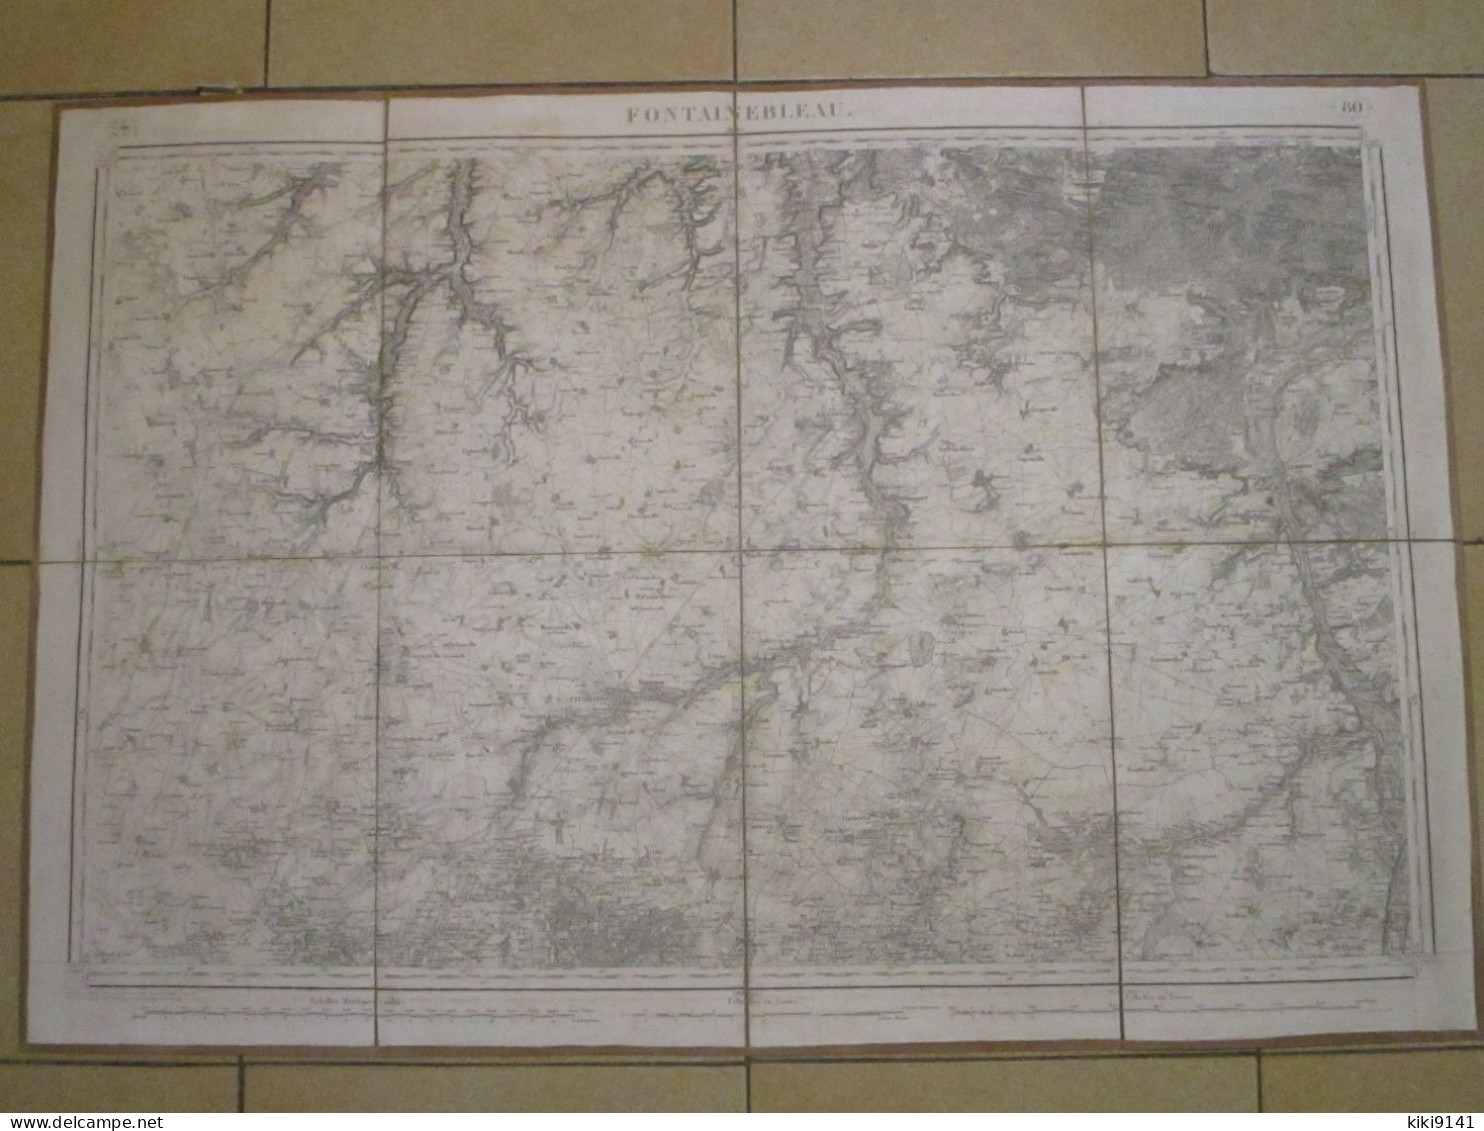 FONTAINEBLEAU - Carte D'État-Major Au 1/80.000ème - Topographical Maps